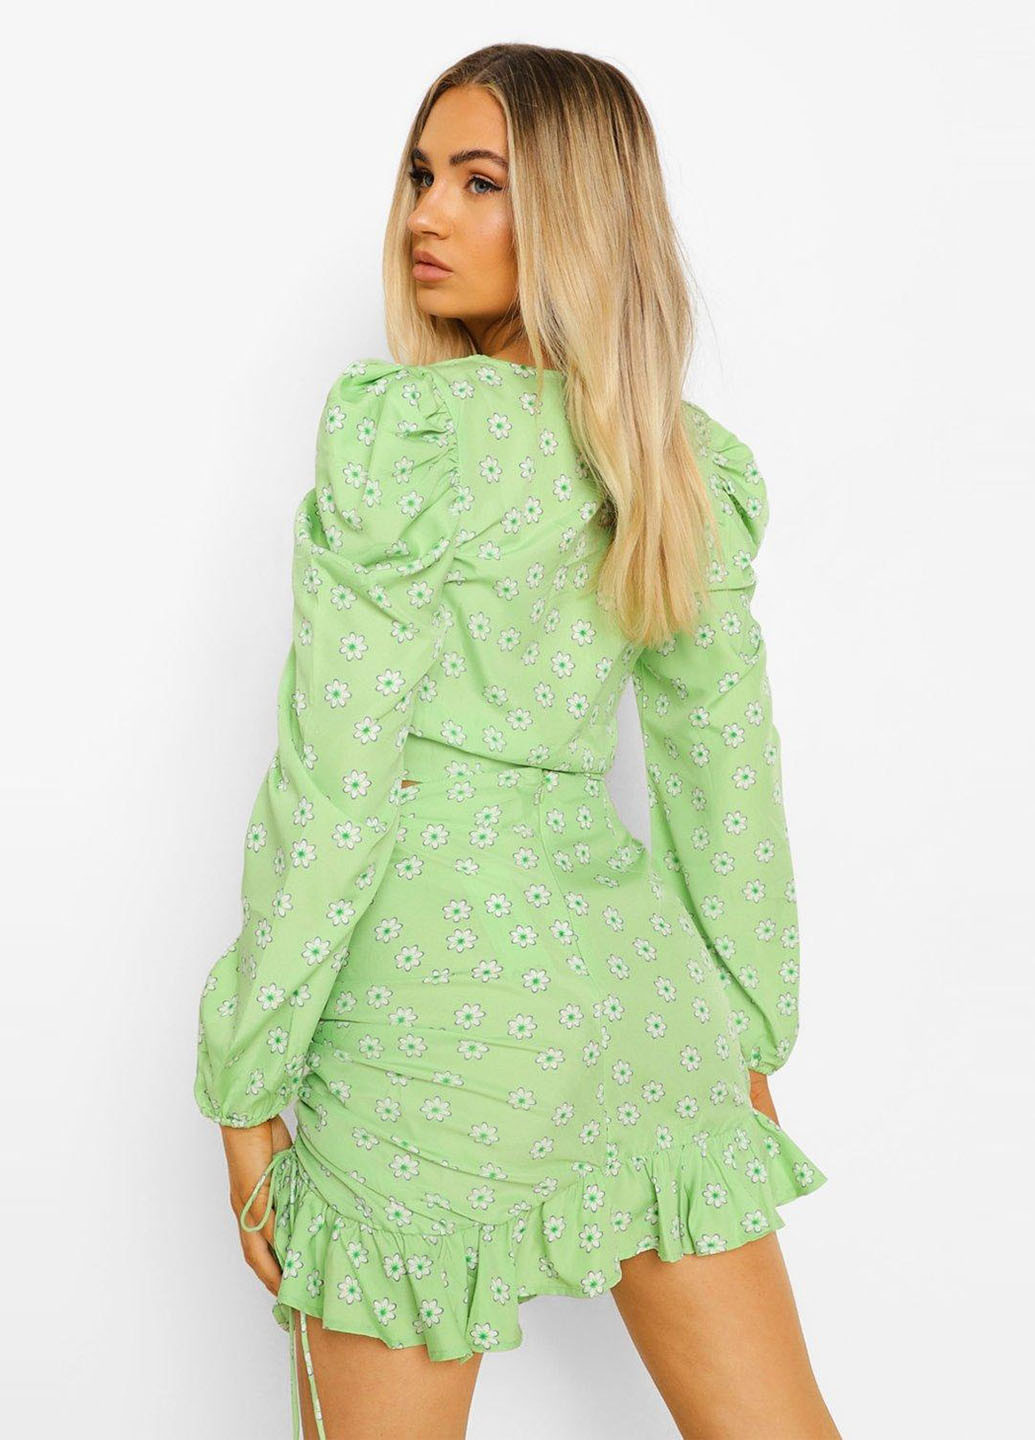 Светло-зеленая кэжуал цветочной расцветки юбка Boohoo а-силуэта (трапеция)